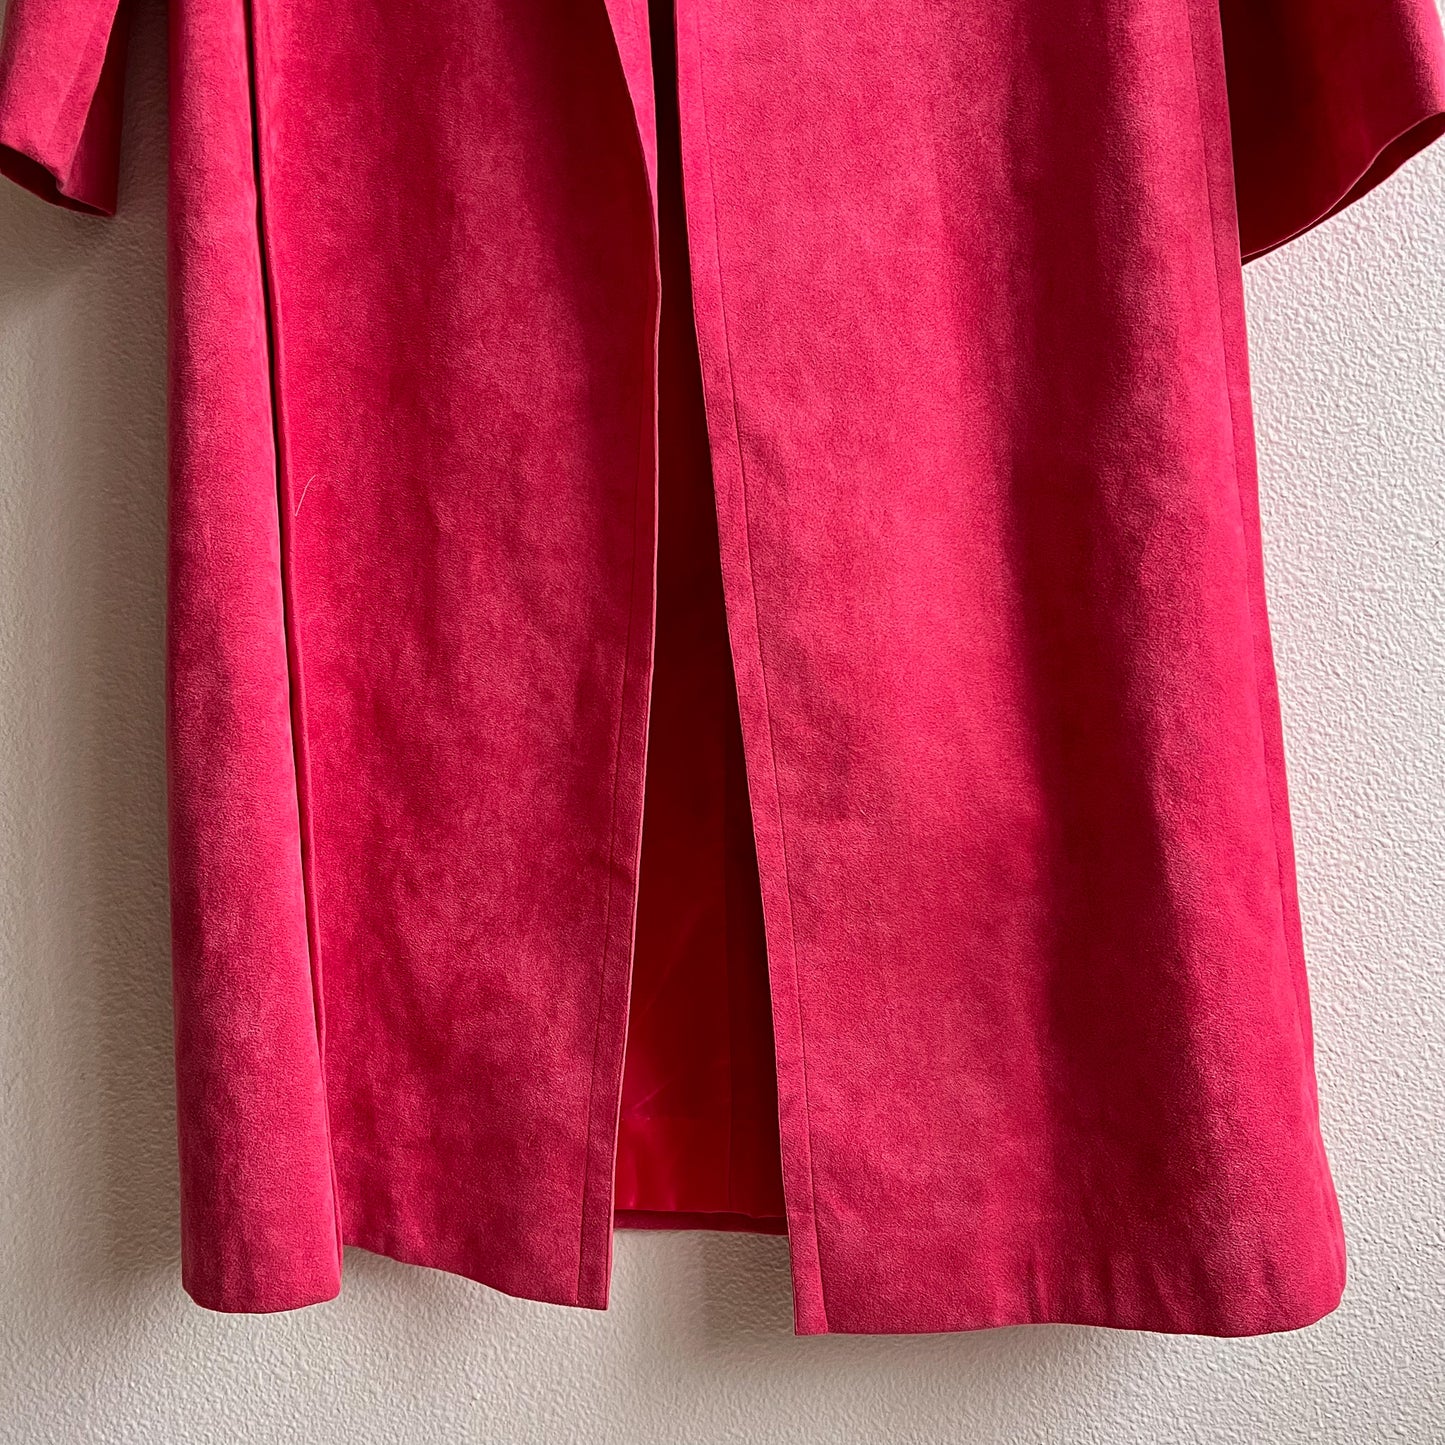 Fabulous 1990s Bright Pink Suede Coat (M/L)